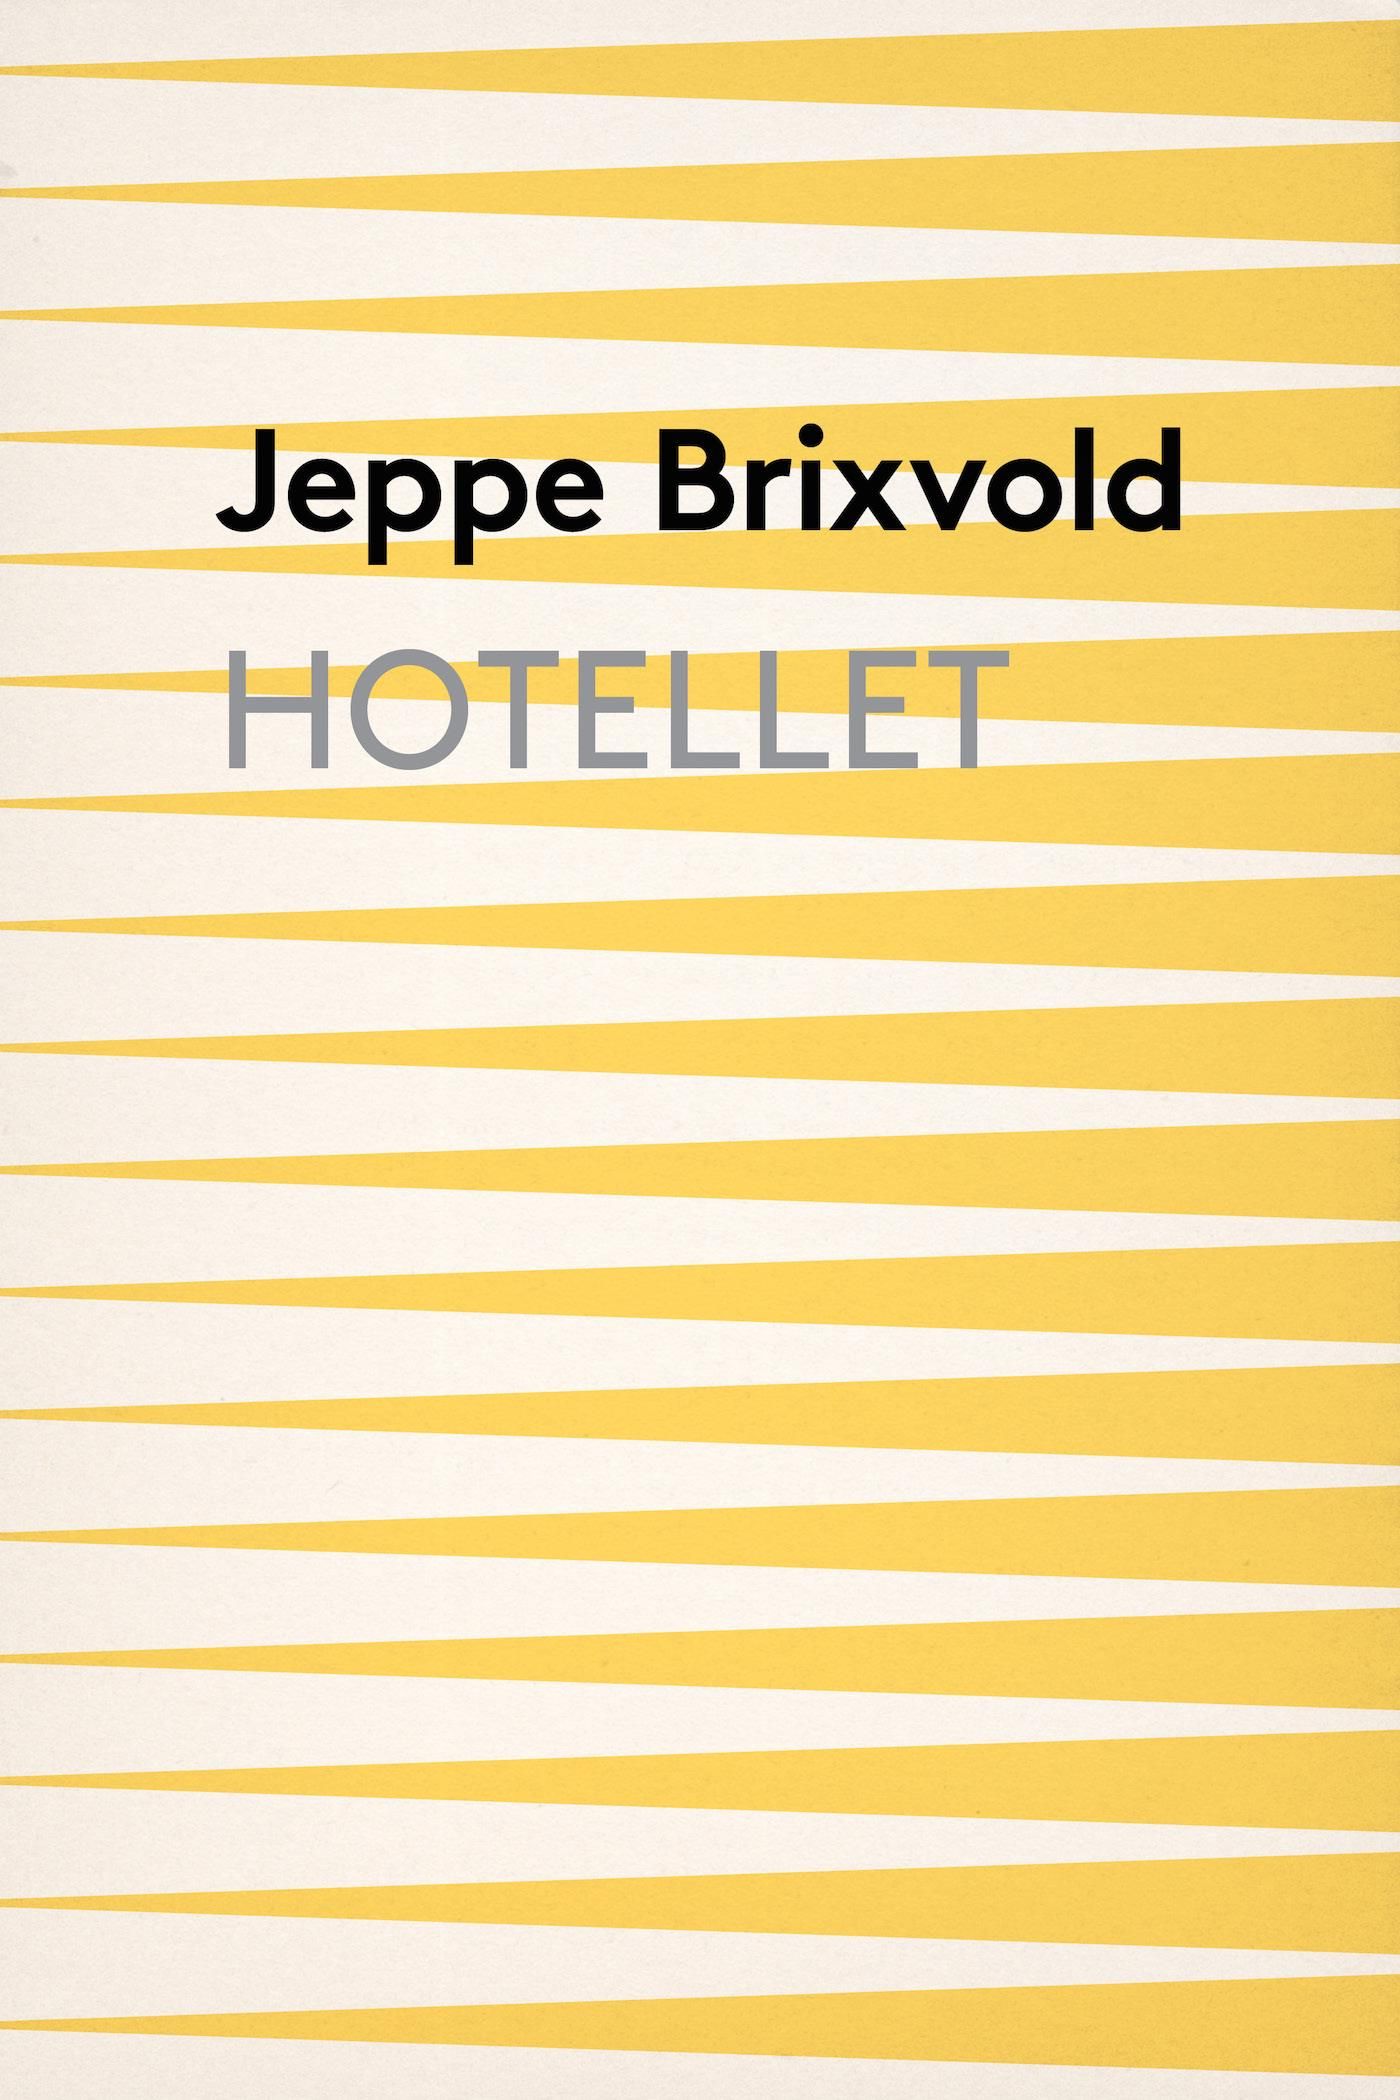 Hotellet, e-bok av Jeppe Brixvold